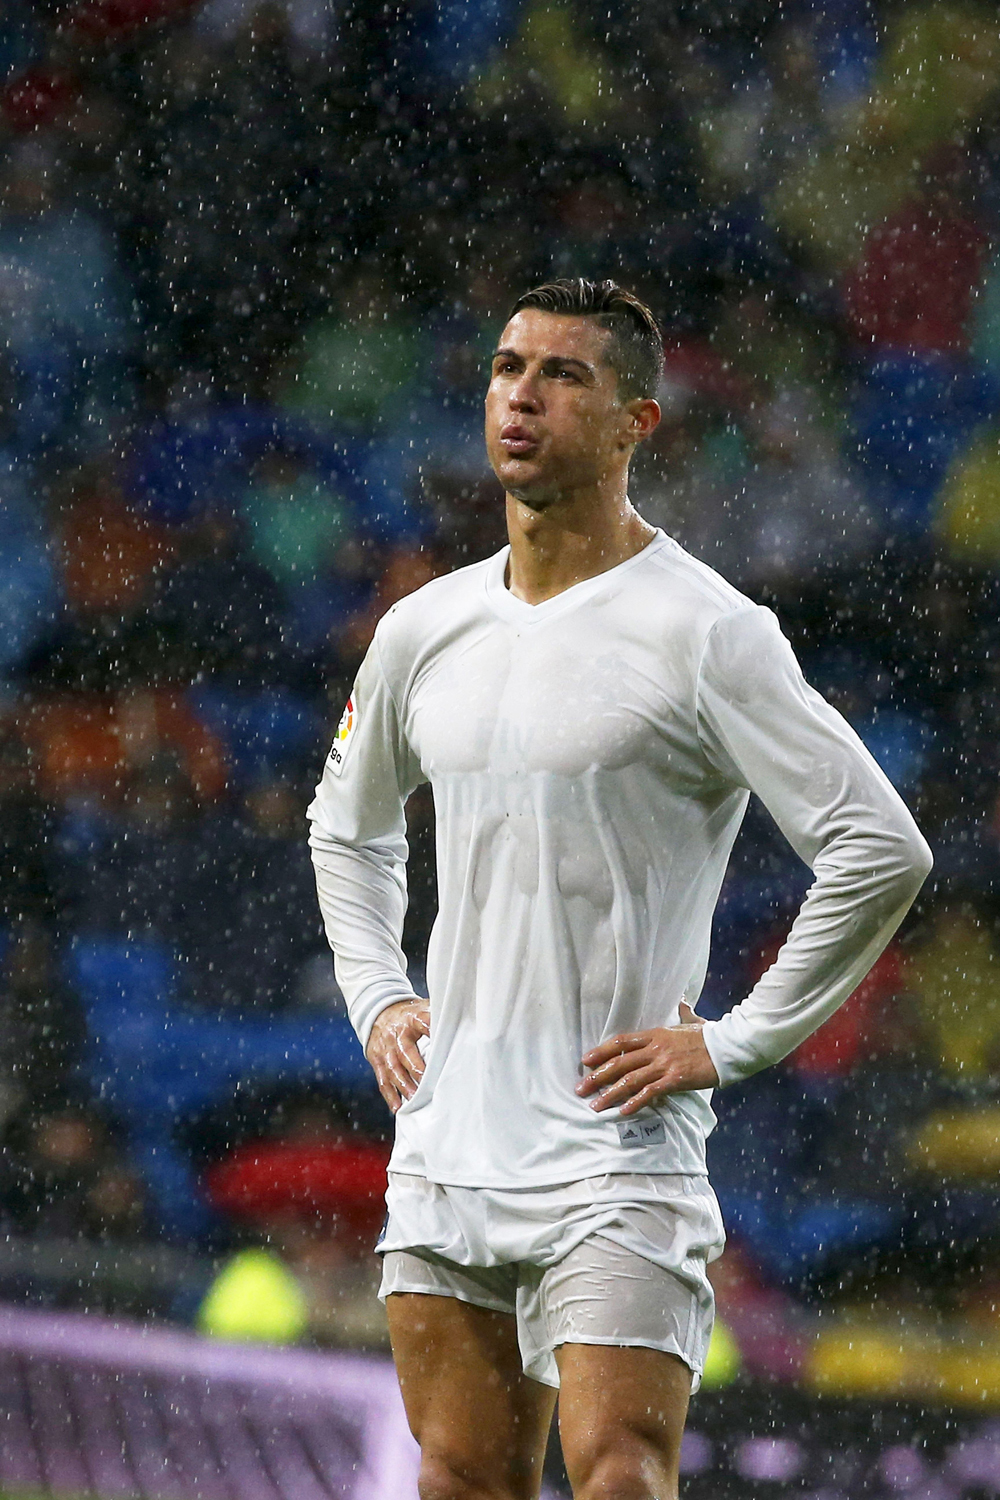 Cristiano Ronaldo Then & Now: Photos Of The Soccer Star